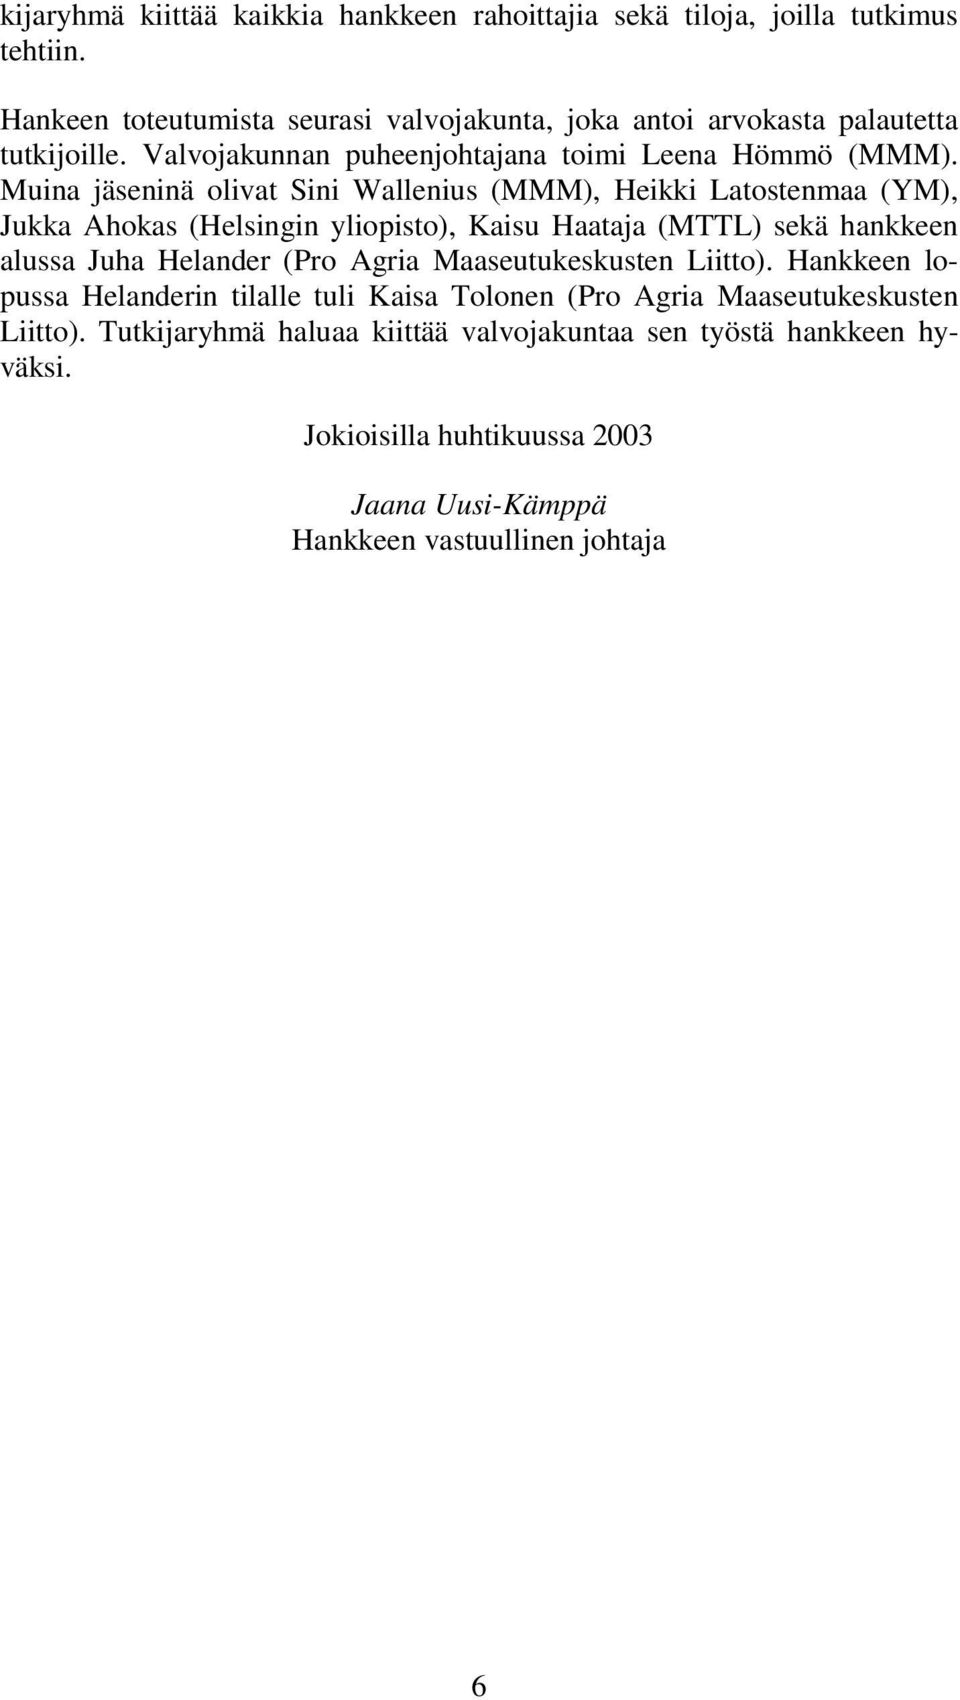 Muina jäseninä olivat Sini Wallenius (MMM), Heikki Latostenmaa (YM), Jukka Ahokas (Helsingin yliopisto), Kaisu Haataja (MTTL) sekä hankkeen alussa Juha Helander (Pro